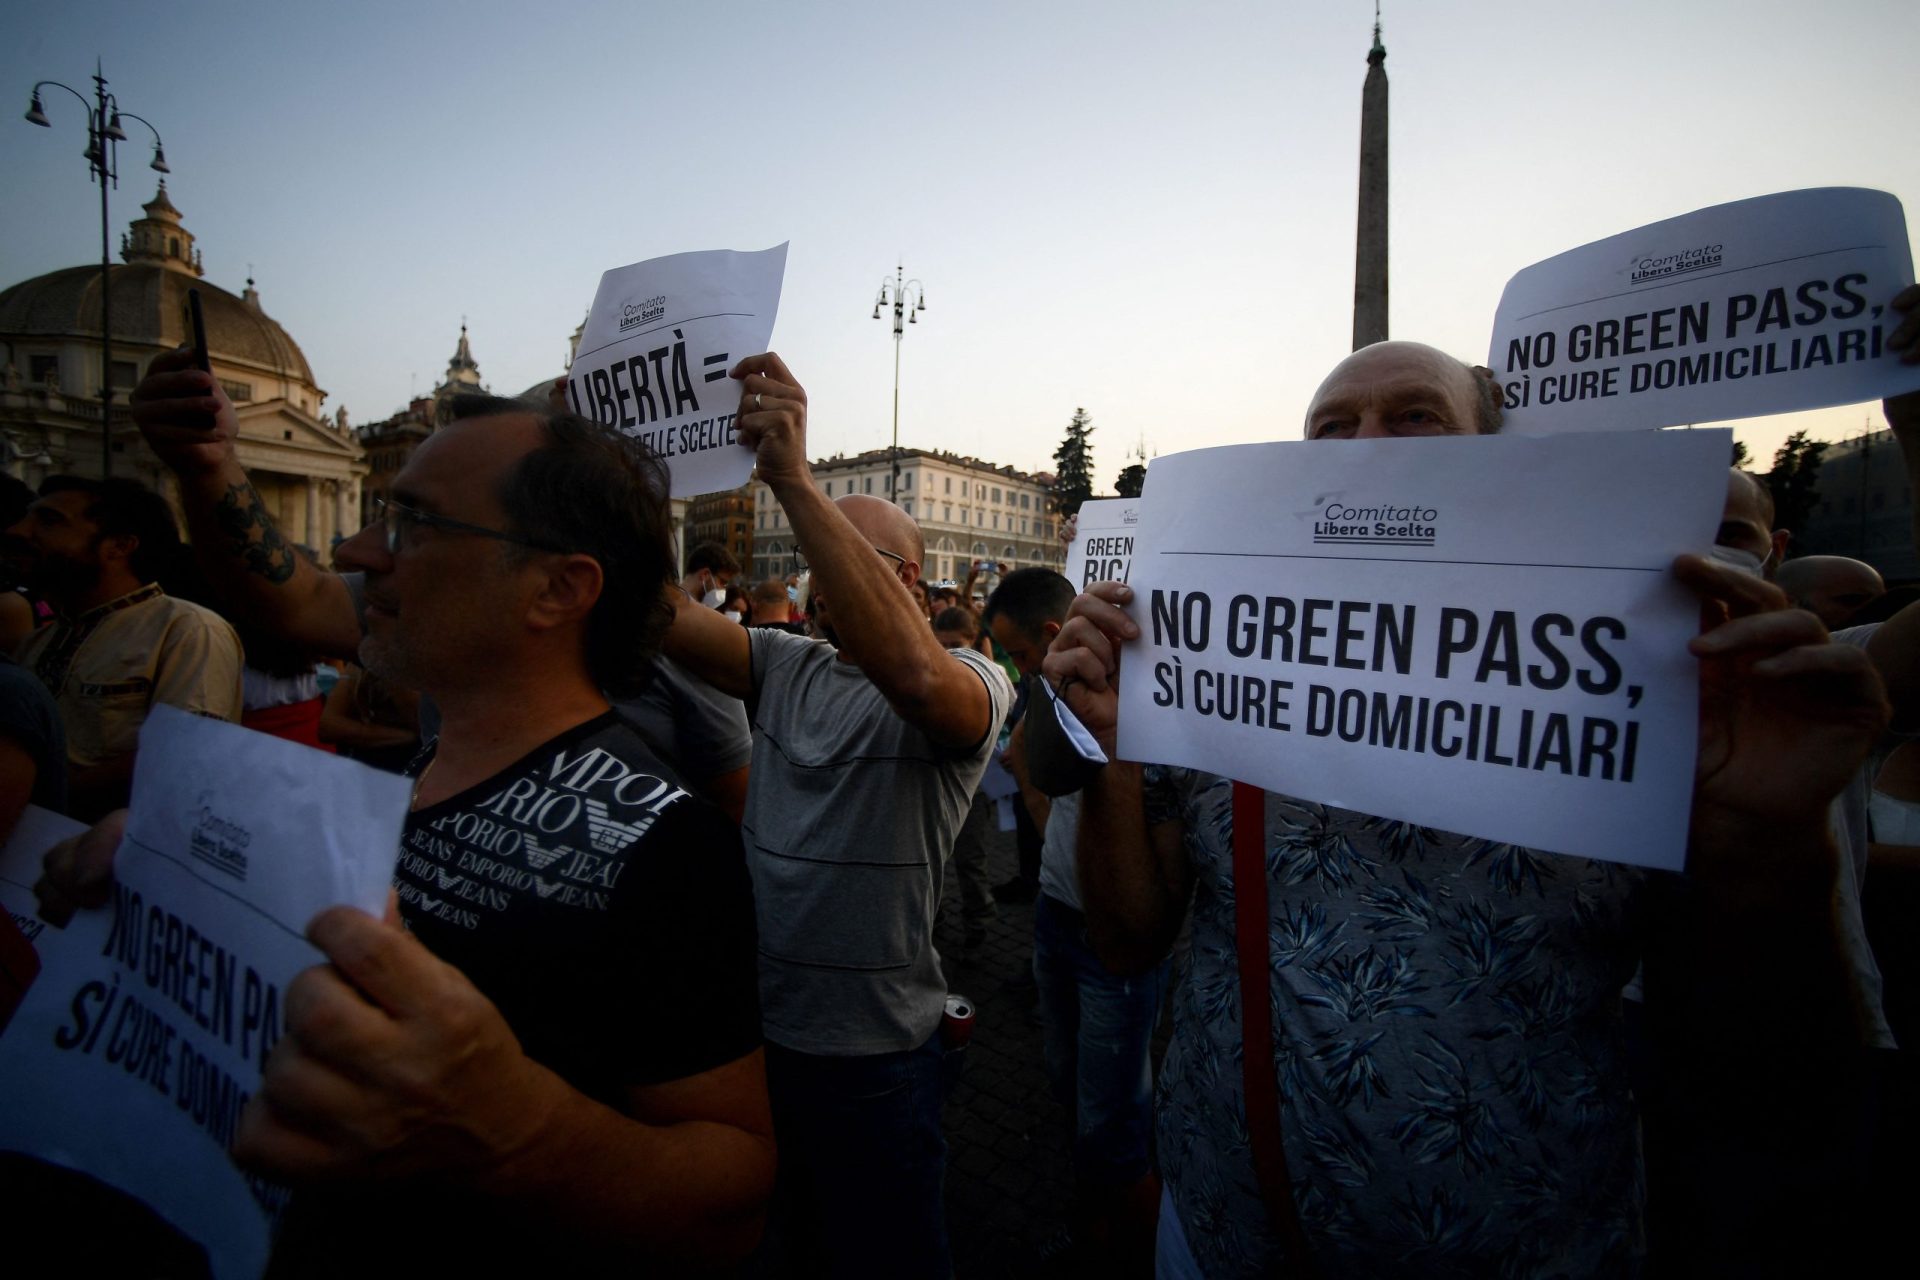 Passe verde provoca caos no parlamento italiano